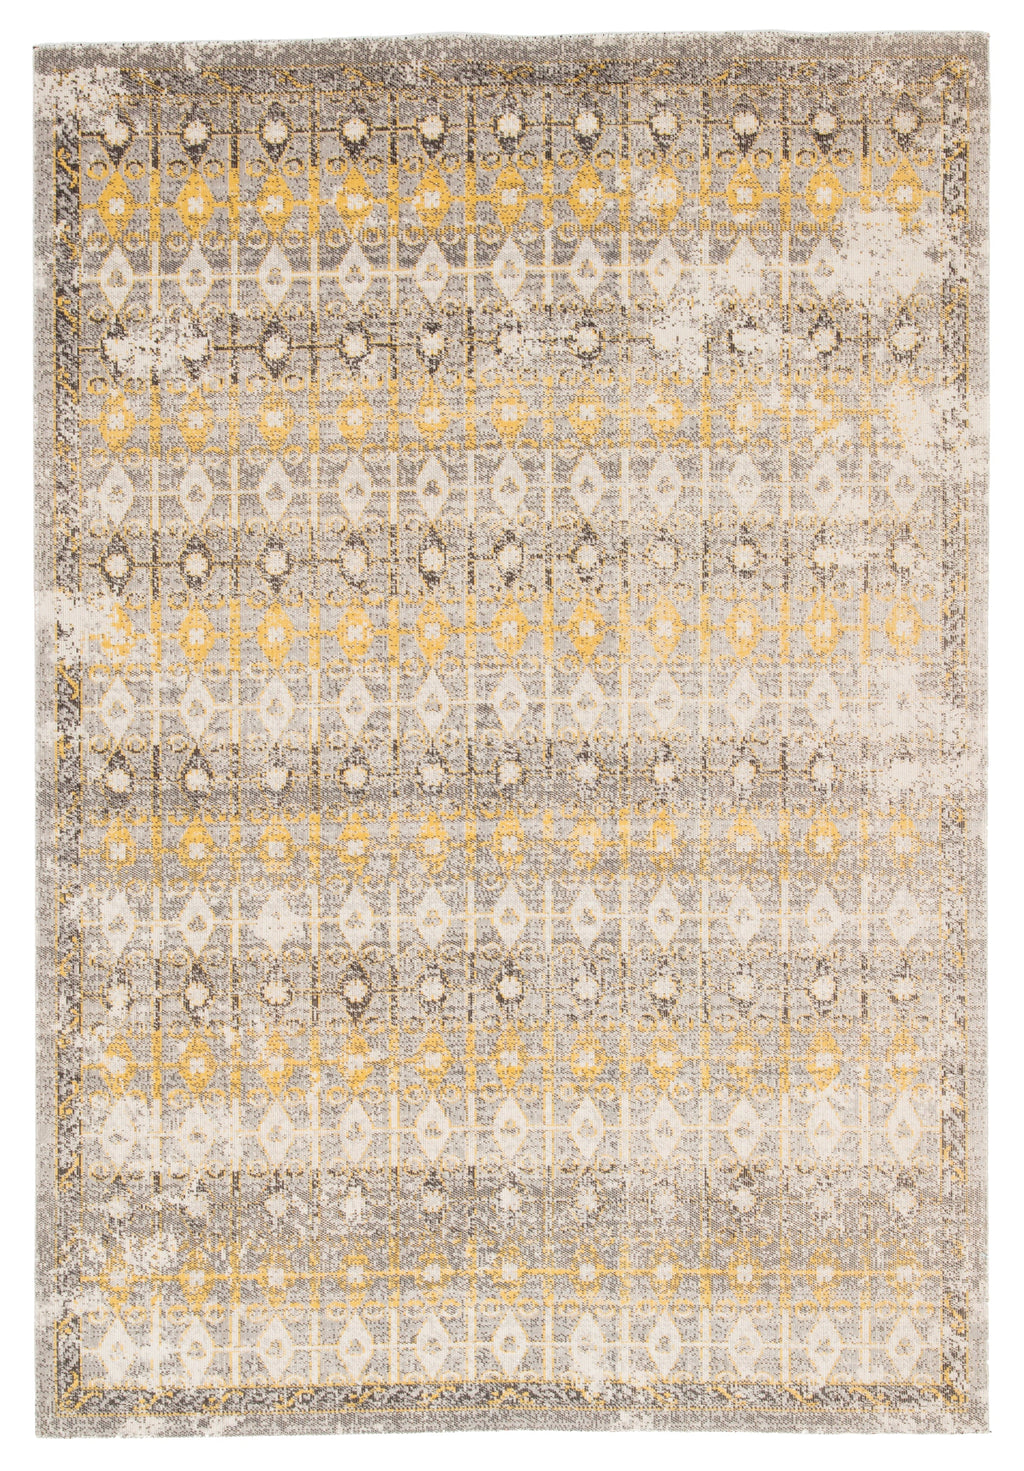 giralda indoor outdoor trellis light gray yellow rug design by jaipur 1